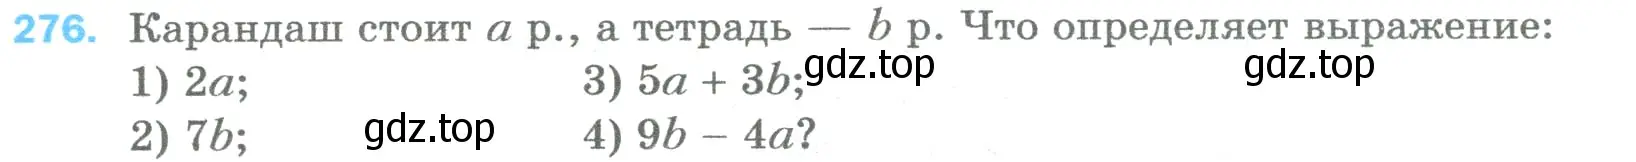 Условие номер 276 (страница 73) гдз по математике 5 класс Мерзляк, Полонский, учебник